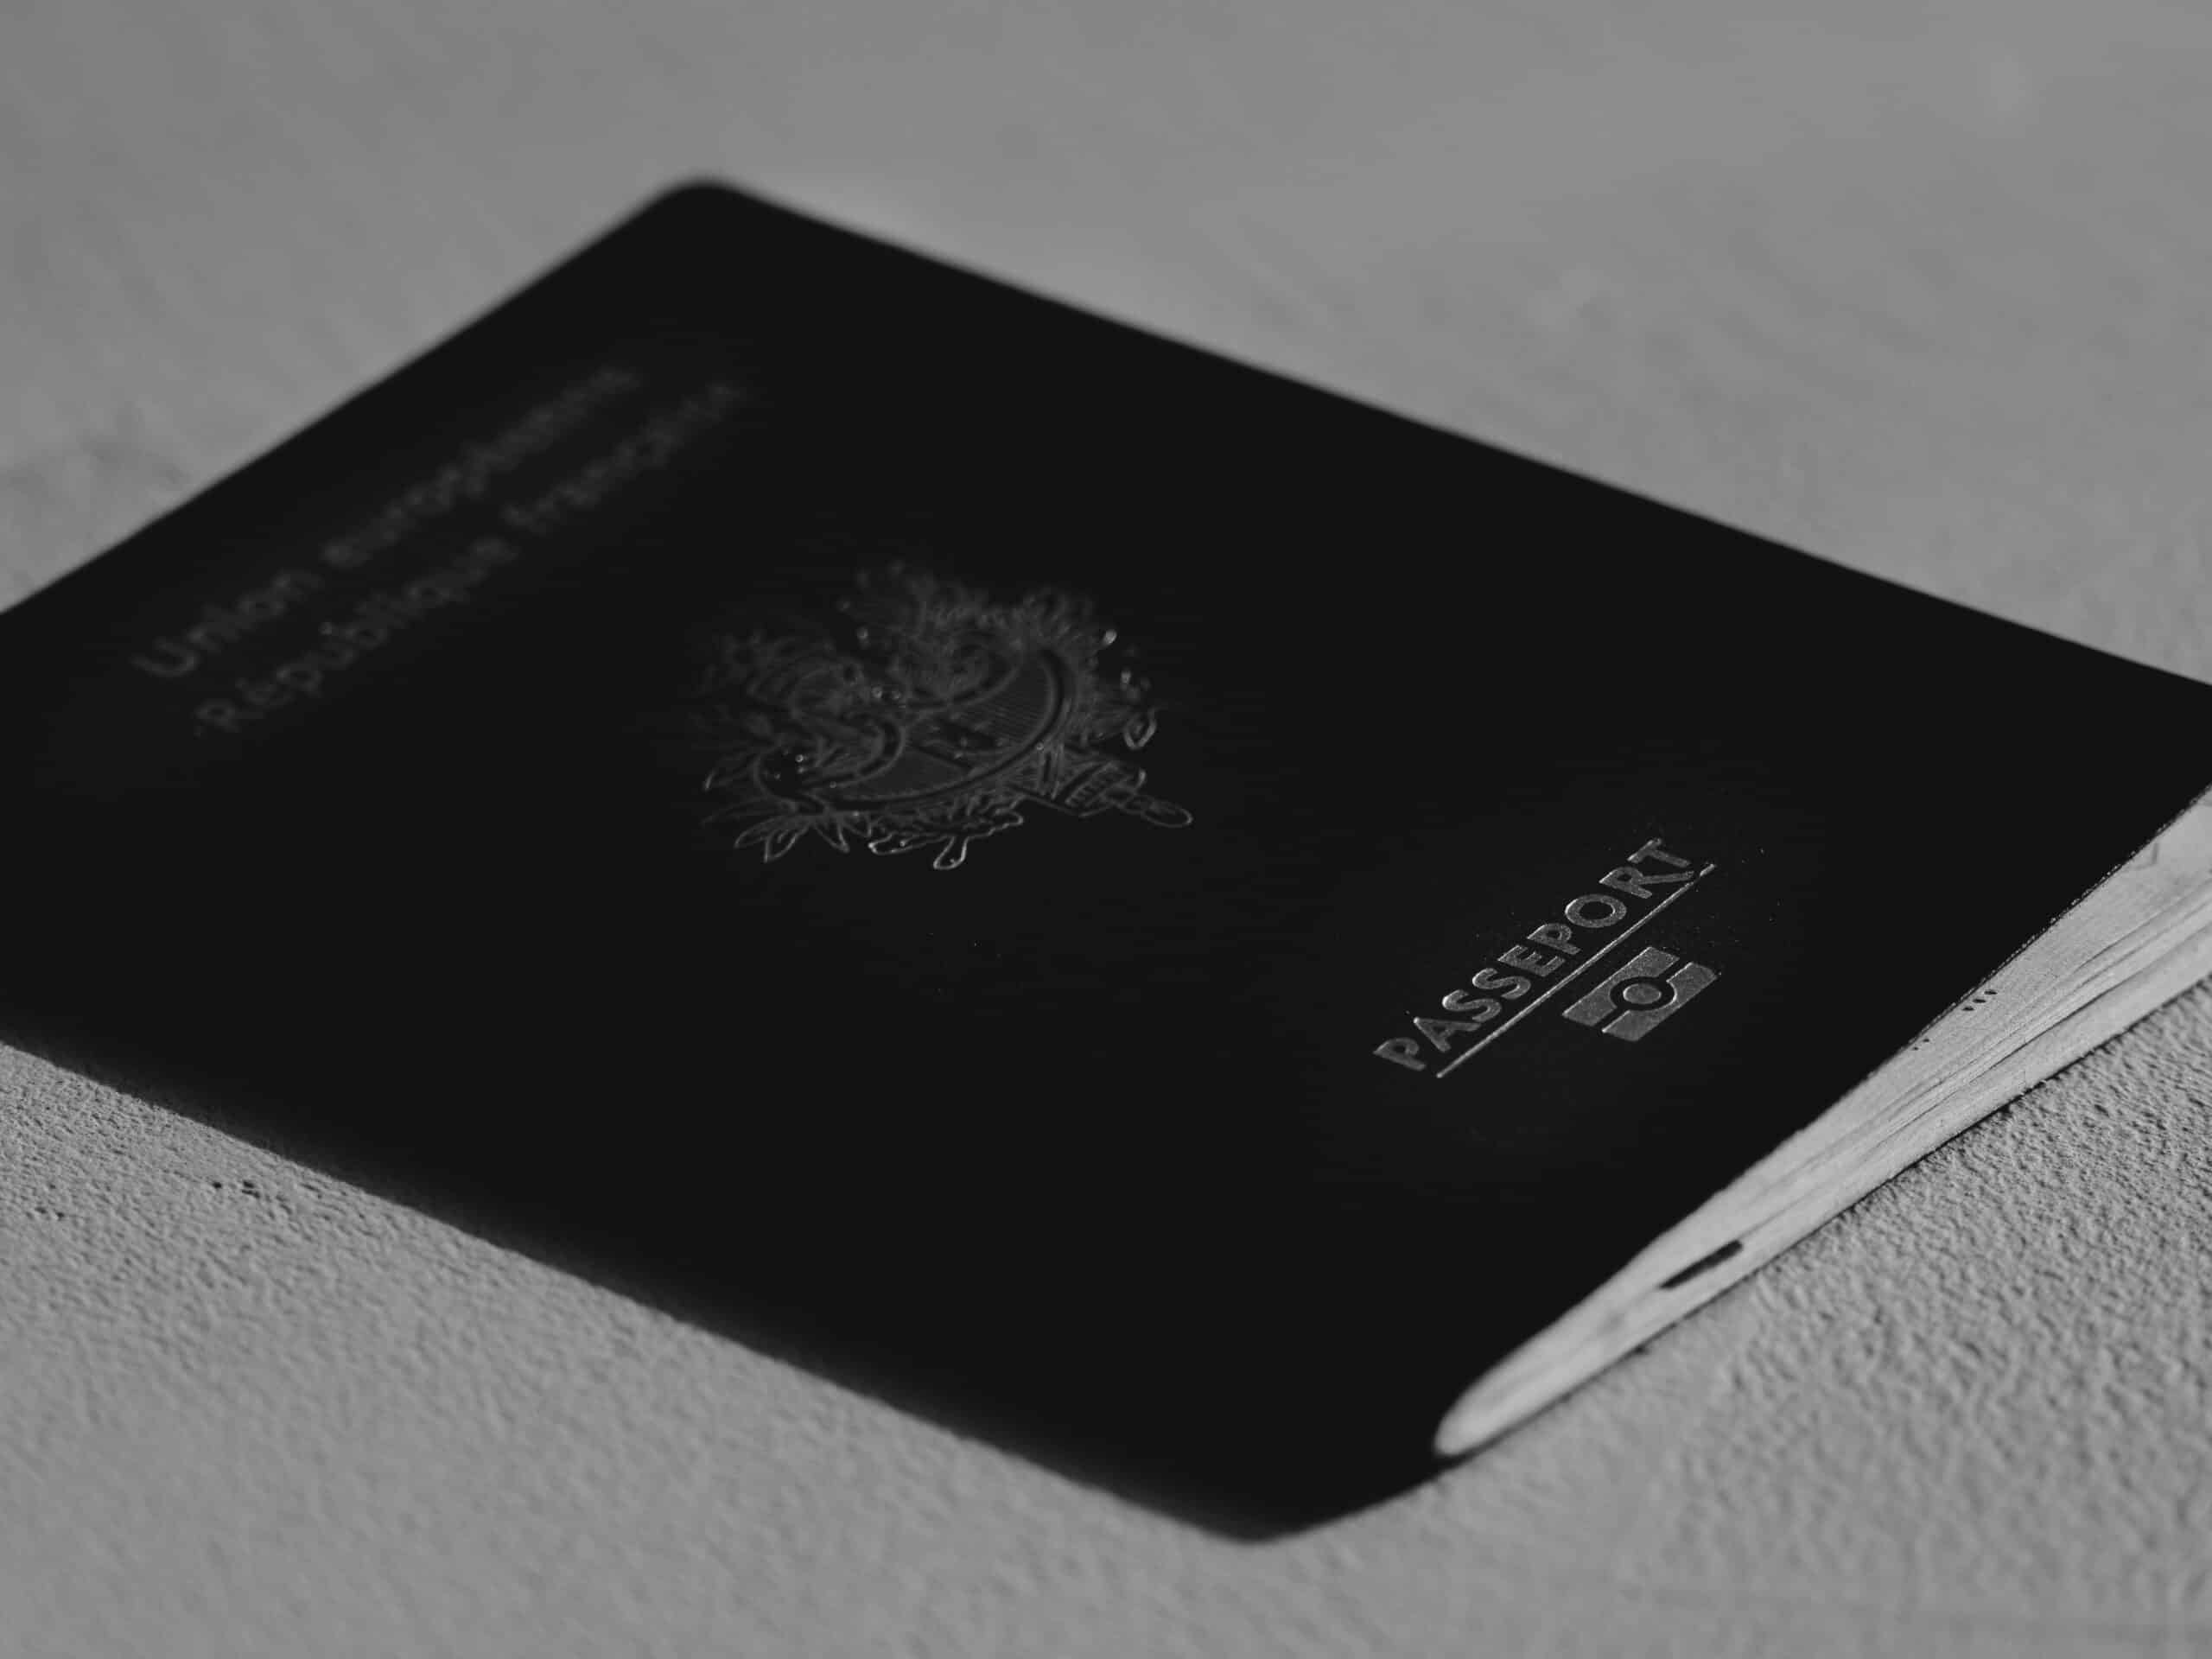 comment savoir si on a un passeport biométrique